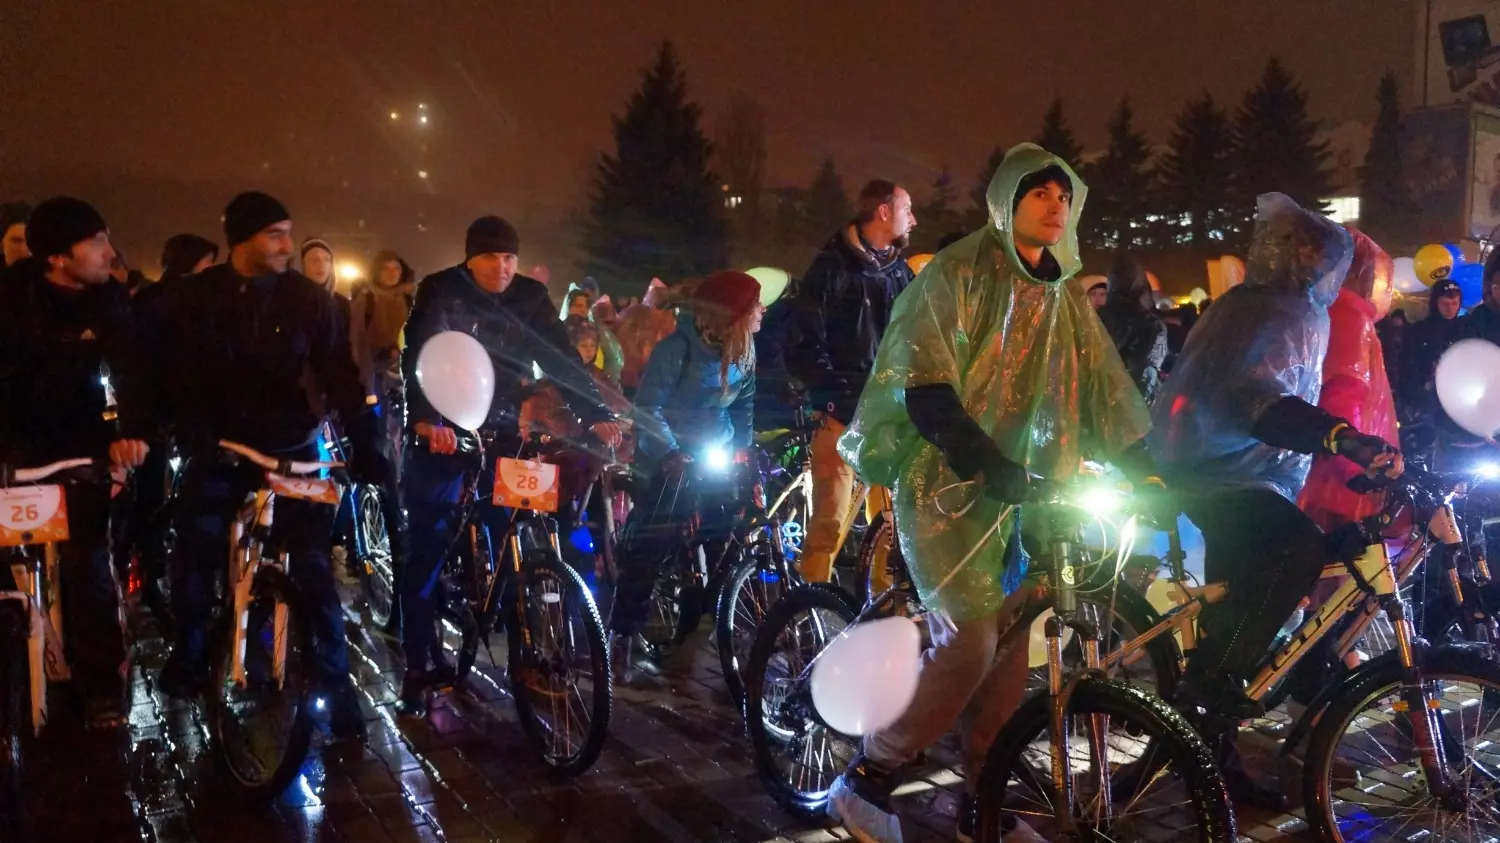 Во время езды в плохую погоду или темное время суток велосипедисты должны включать фары или фонарь